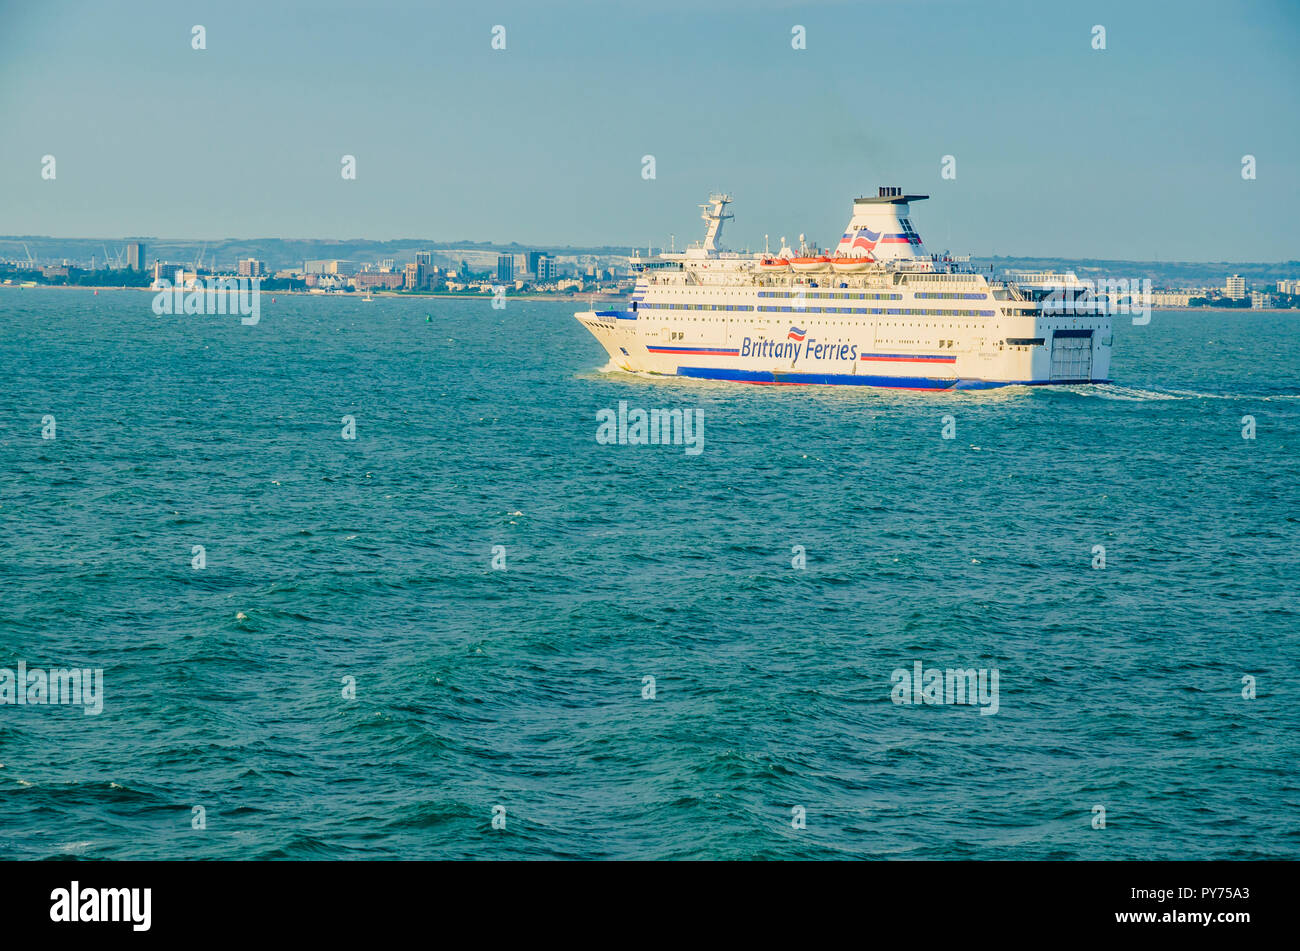 Die Bretagne Fähre aus der Bretagne Fähren Reederei, Segeln nach Portsmouth Harbour. Portsmouth, Hampshire, England, Vereinigtes Königreich, UK, Europ. Stockfoto